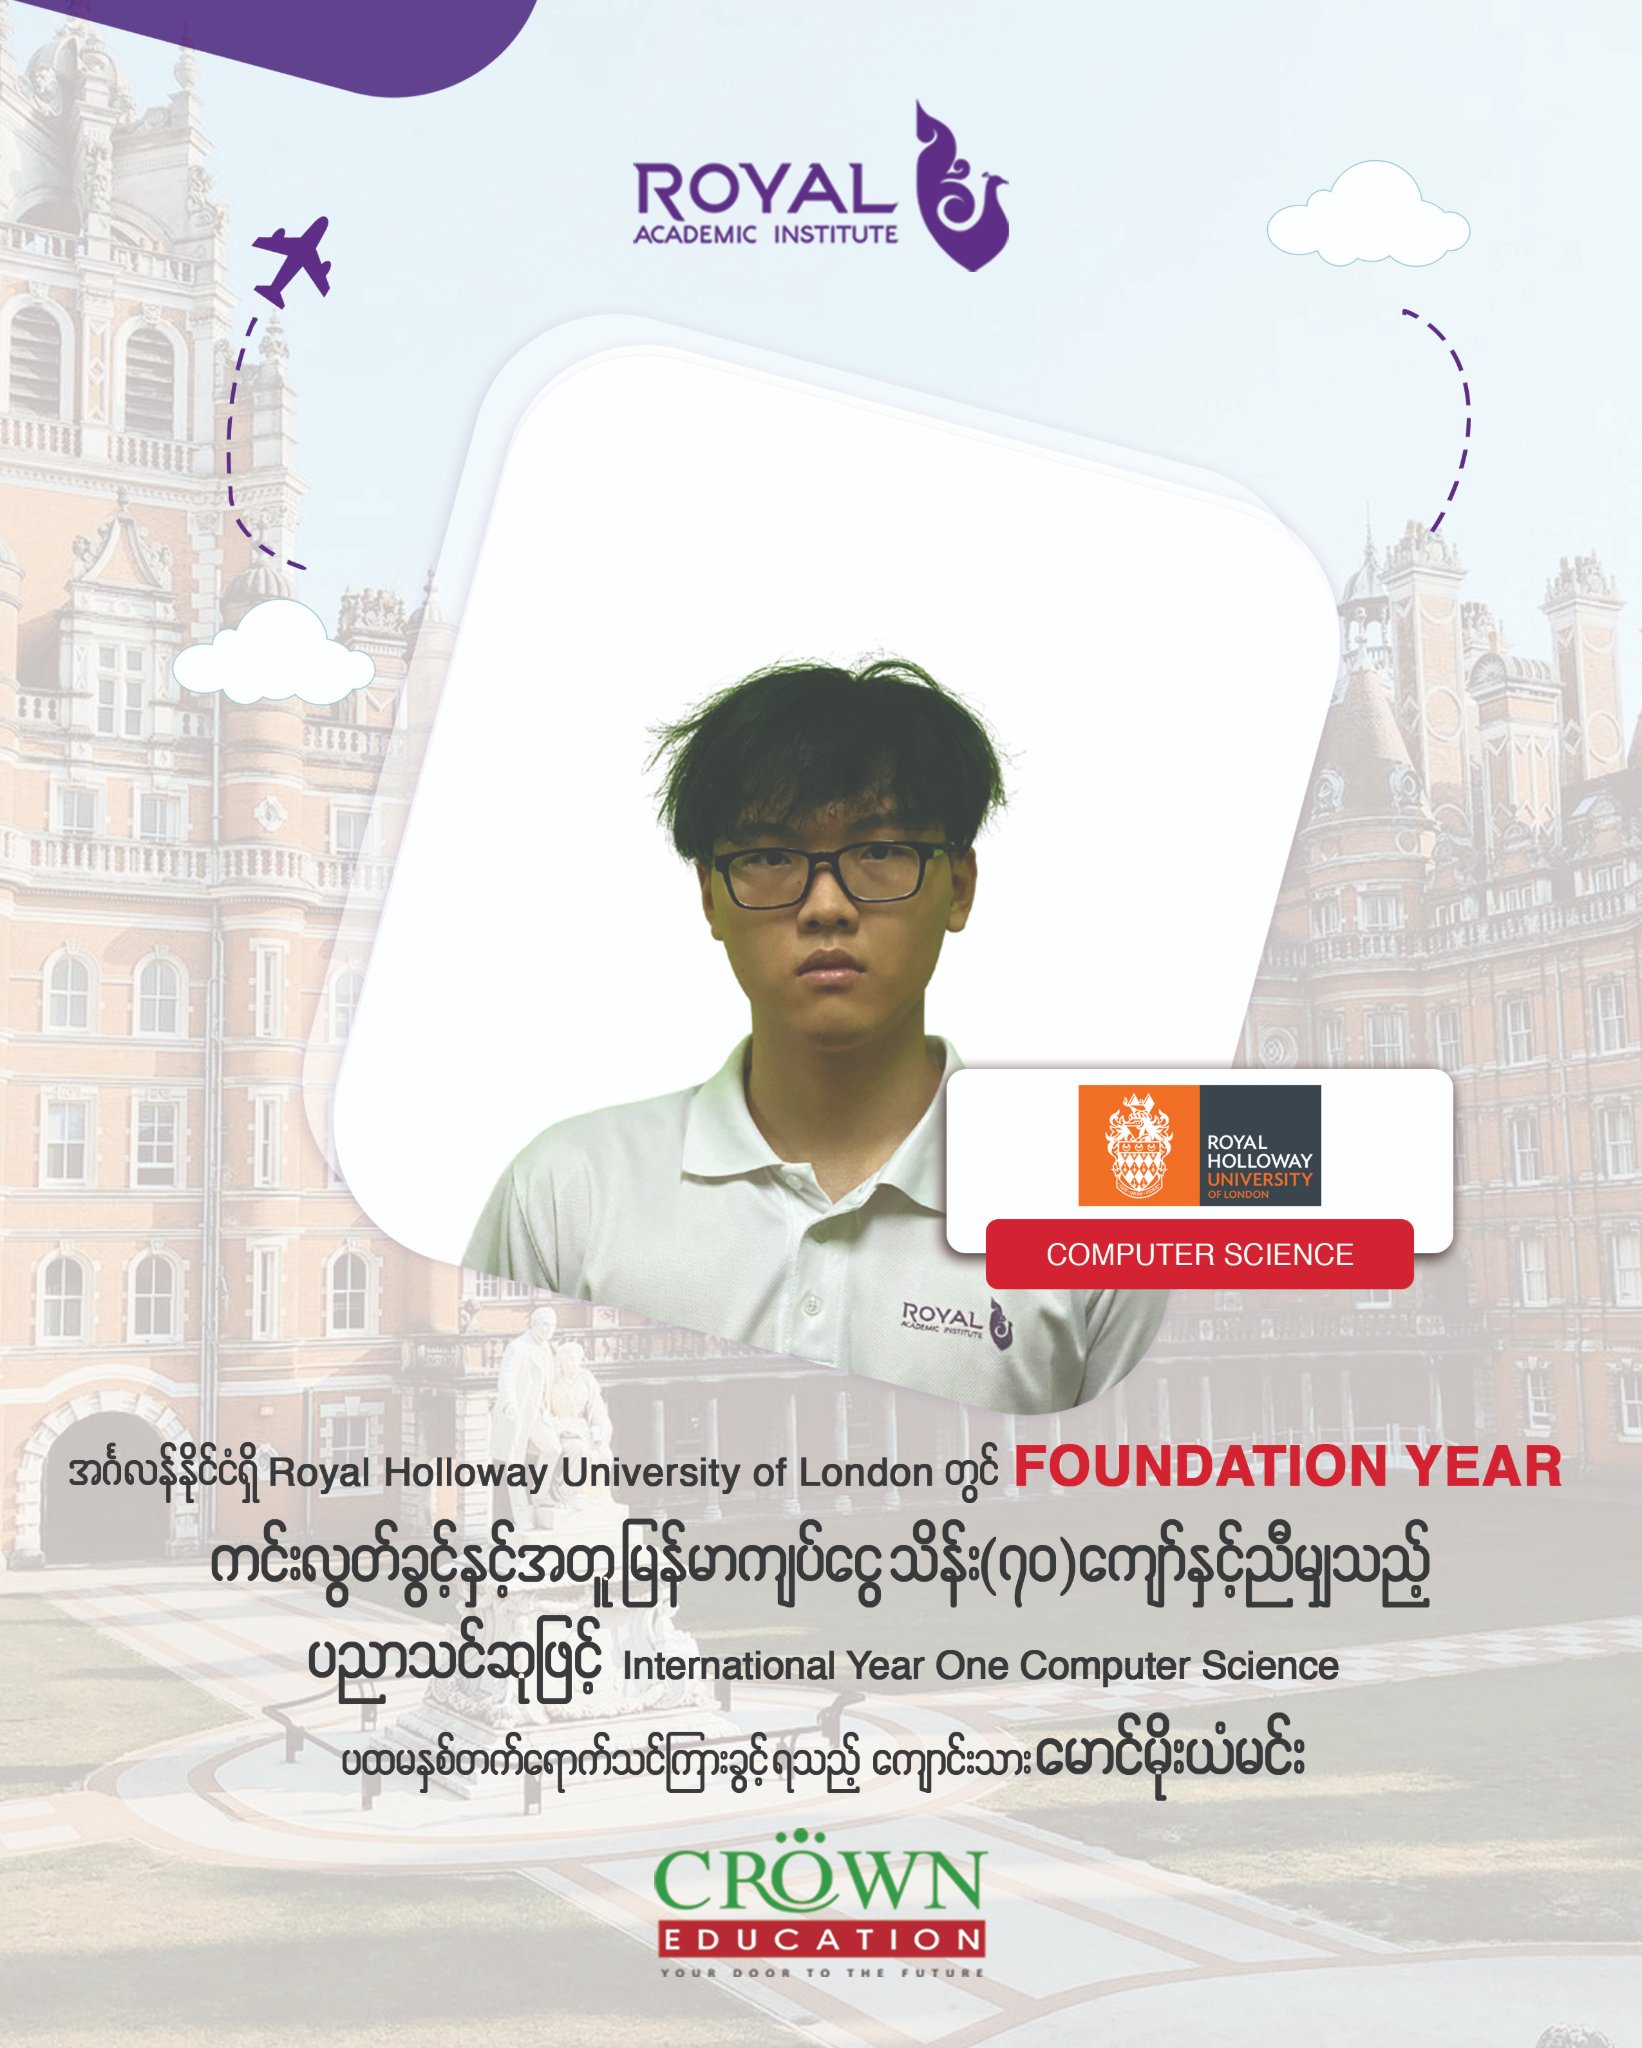 ❝အင်္ဂလန်နိုင်ငံရှိ Royal Holloway, University of London တွင် Foundation Year ကင်းလွတ်ခွင့်နှင့်အတူ မြန်မာကျပ်ငွေ သိန်း (၇ဝ)ကျော်နှင့်ညီမျှသည့် ပညာသင်ဆုဖြင့် International Year One Computer Science ပထမနှစ်တက်ရောက်သင်ကြားခွင့်ရသည့် ကျောင်းသား မောင်မိုးယံမင်း❞